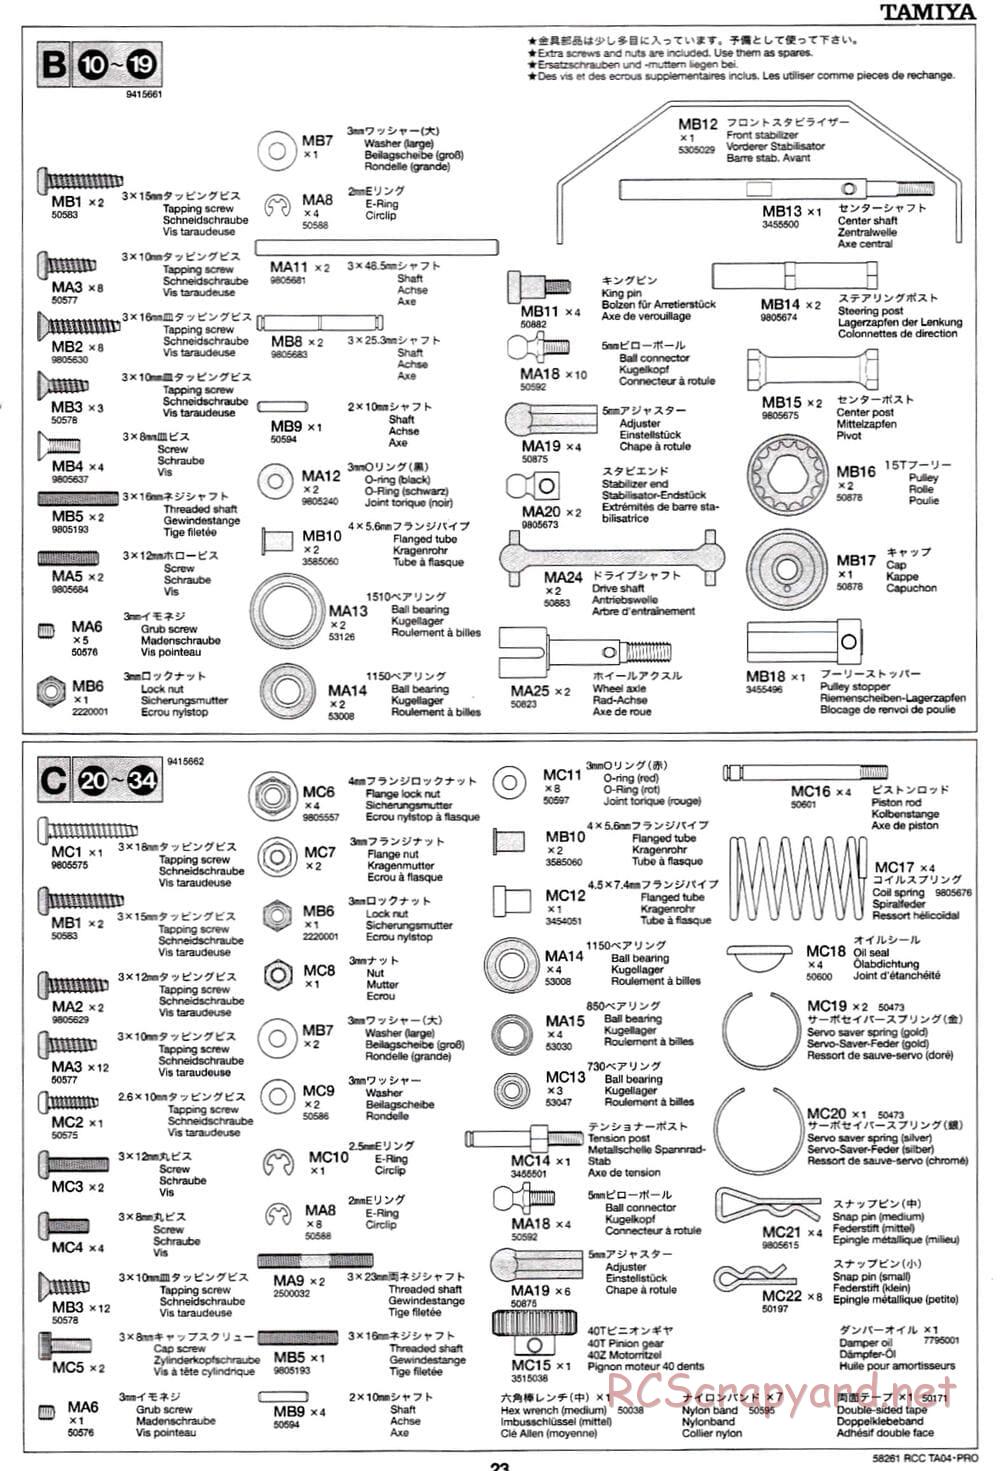 Tamiya - TA-04 Pro Chassis - Manual - Page 23